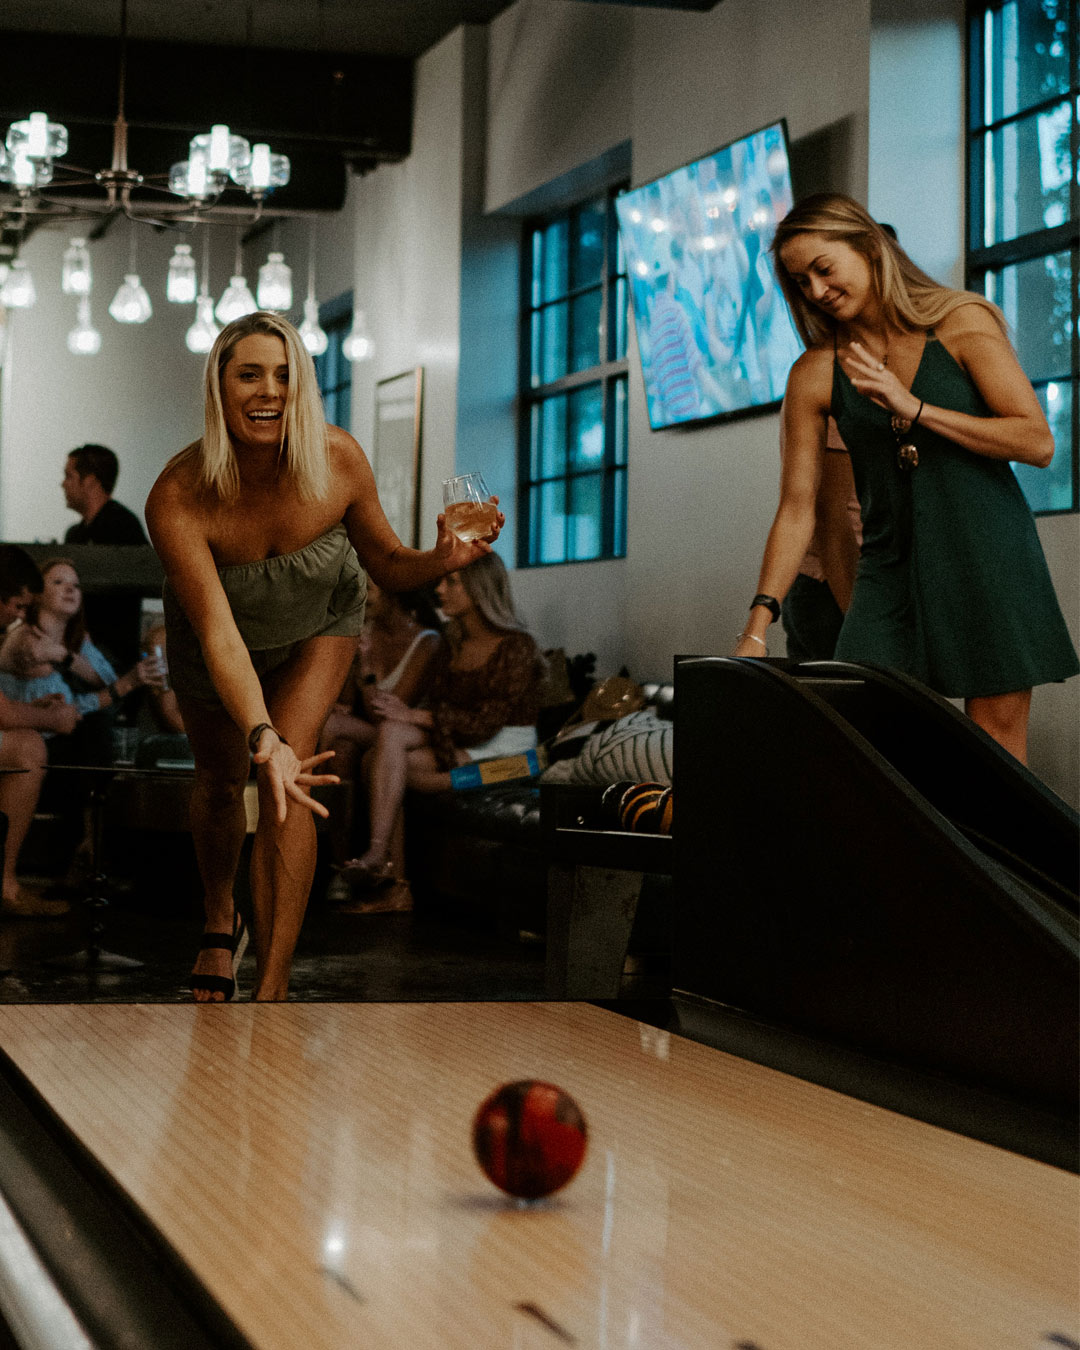 bachelorette party ideas bride-hates-bowling